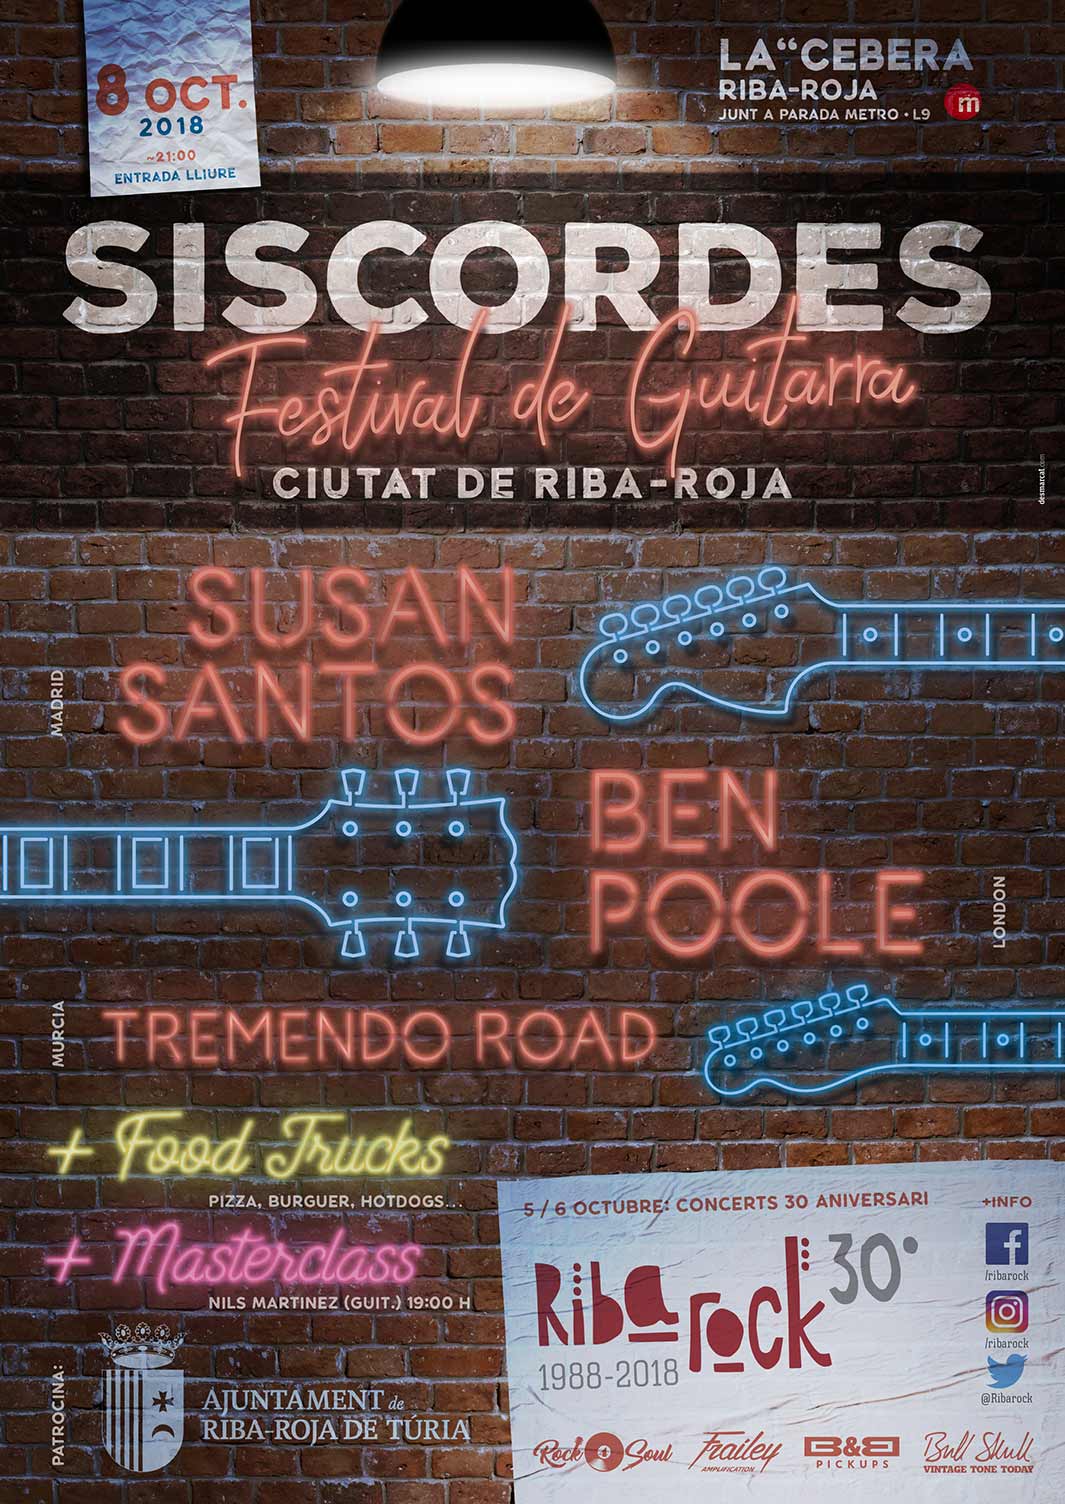 Cartel para Siscordes Festival de Guitarra del año 2018